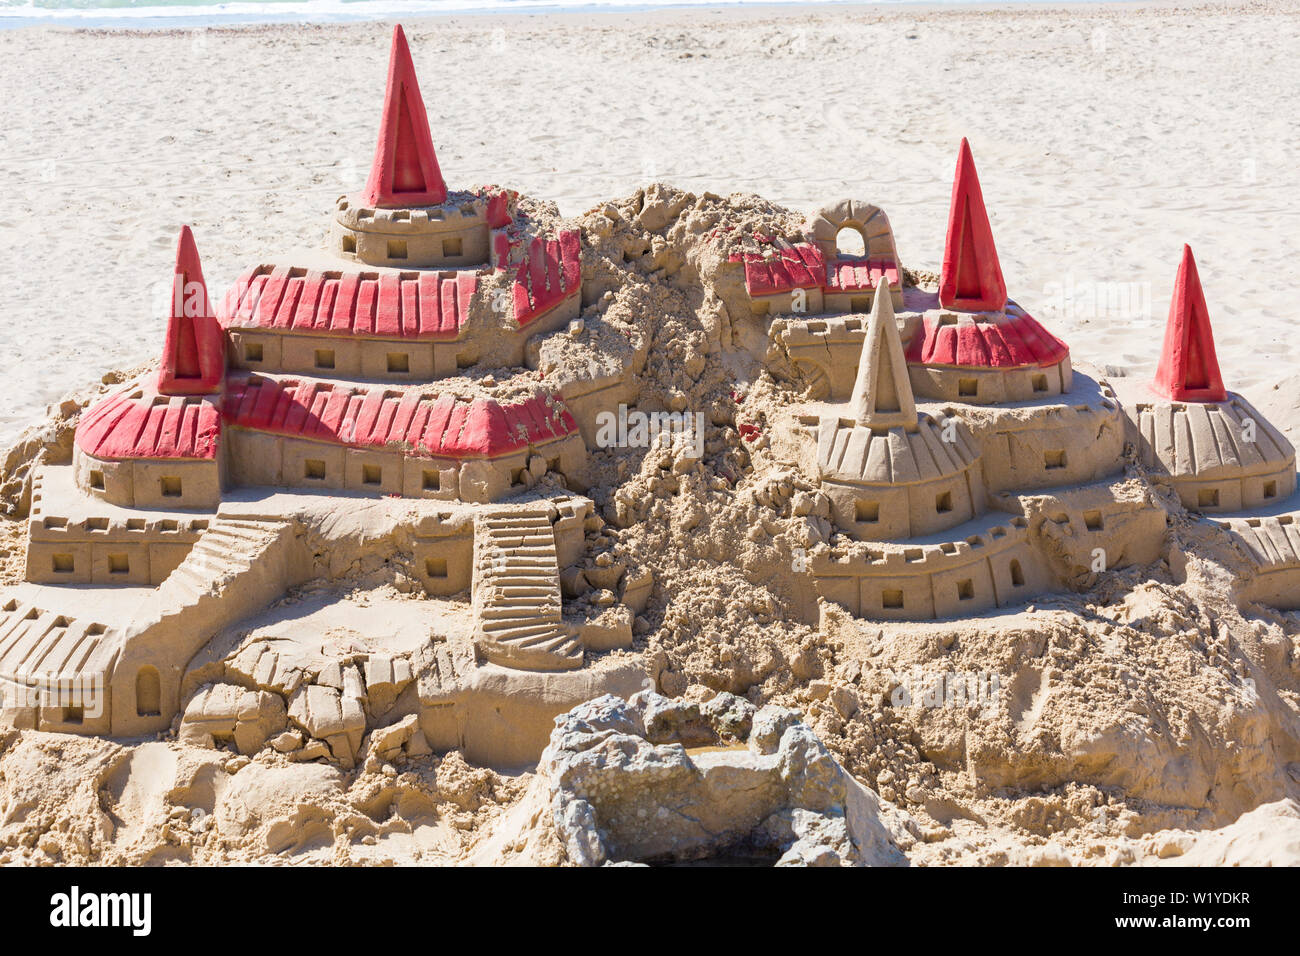 Elaborata scultura del castello di sabbia sulla spiaggia di Durley Chine a Bournemouth, Dorset UK nel mese di luglio - Castello di Hogwarts da Harry Potter nella sabbia Foto Stock